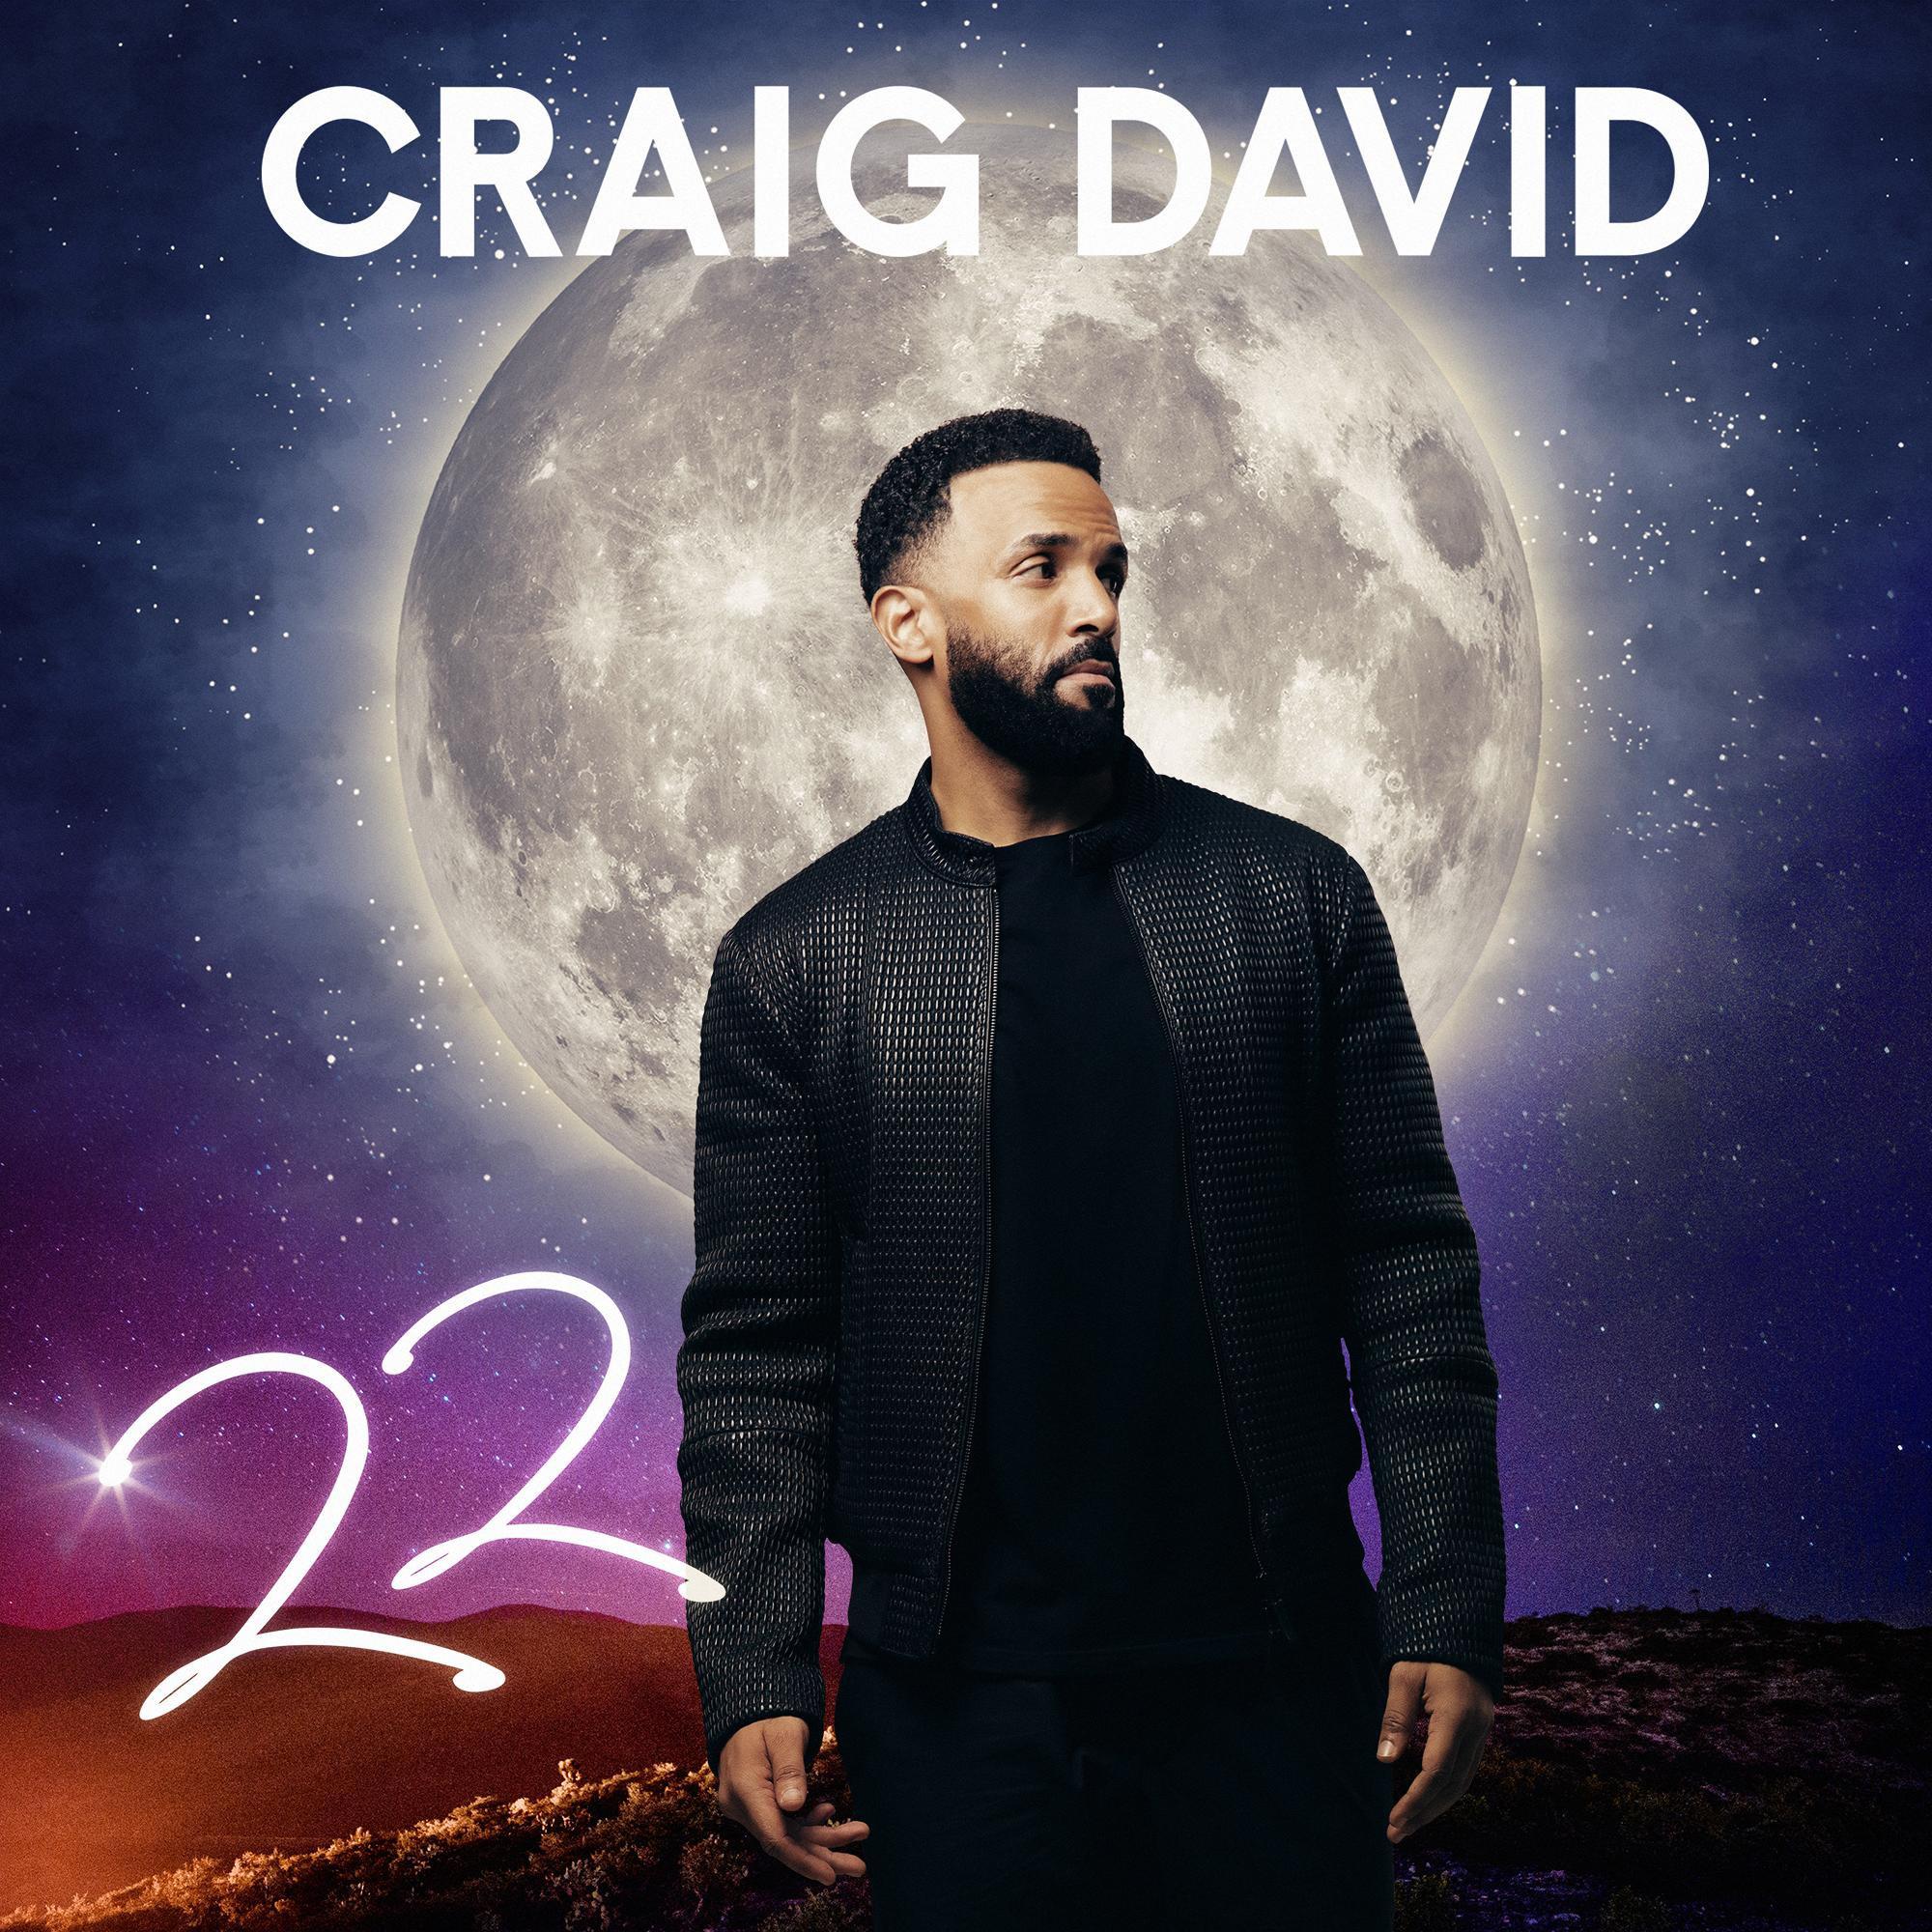 Craig David - Give It All Up